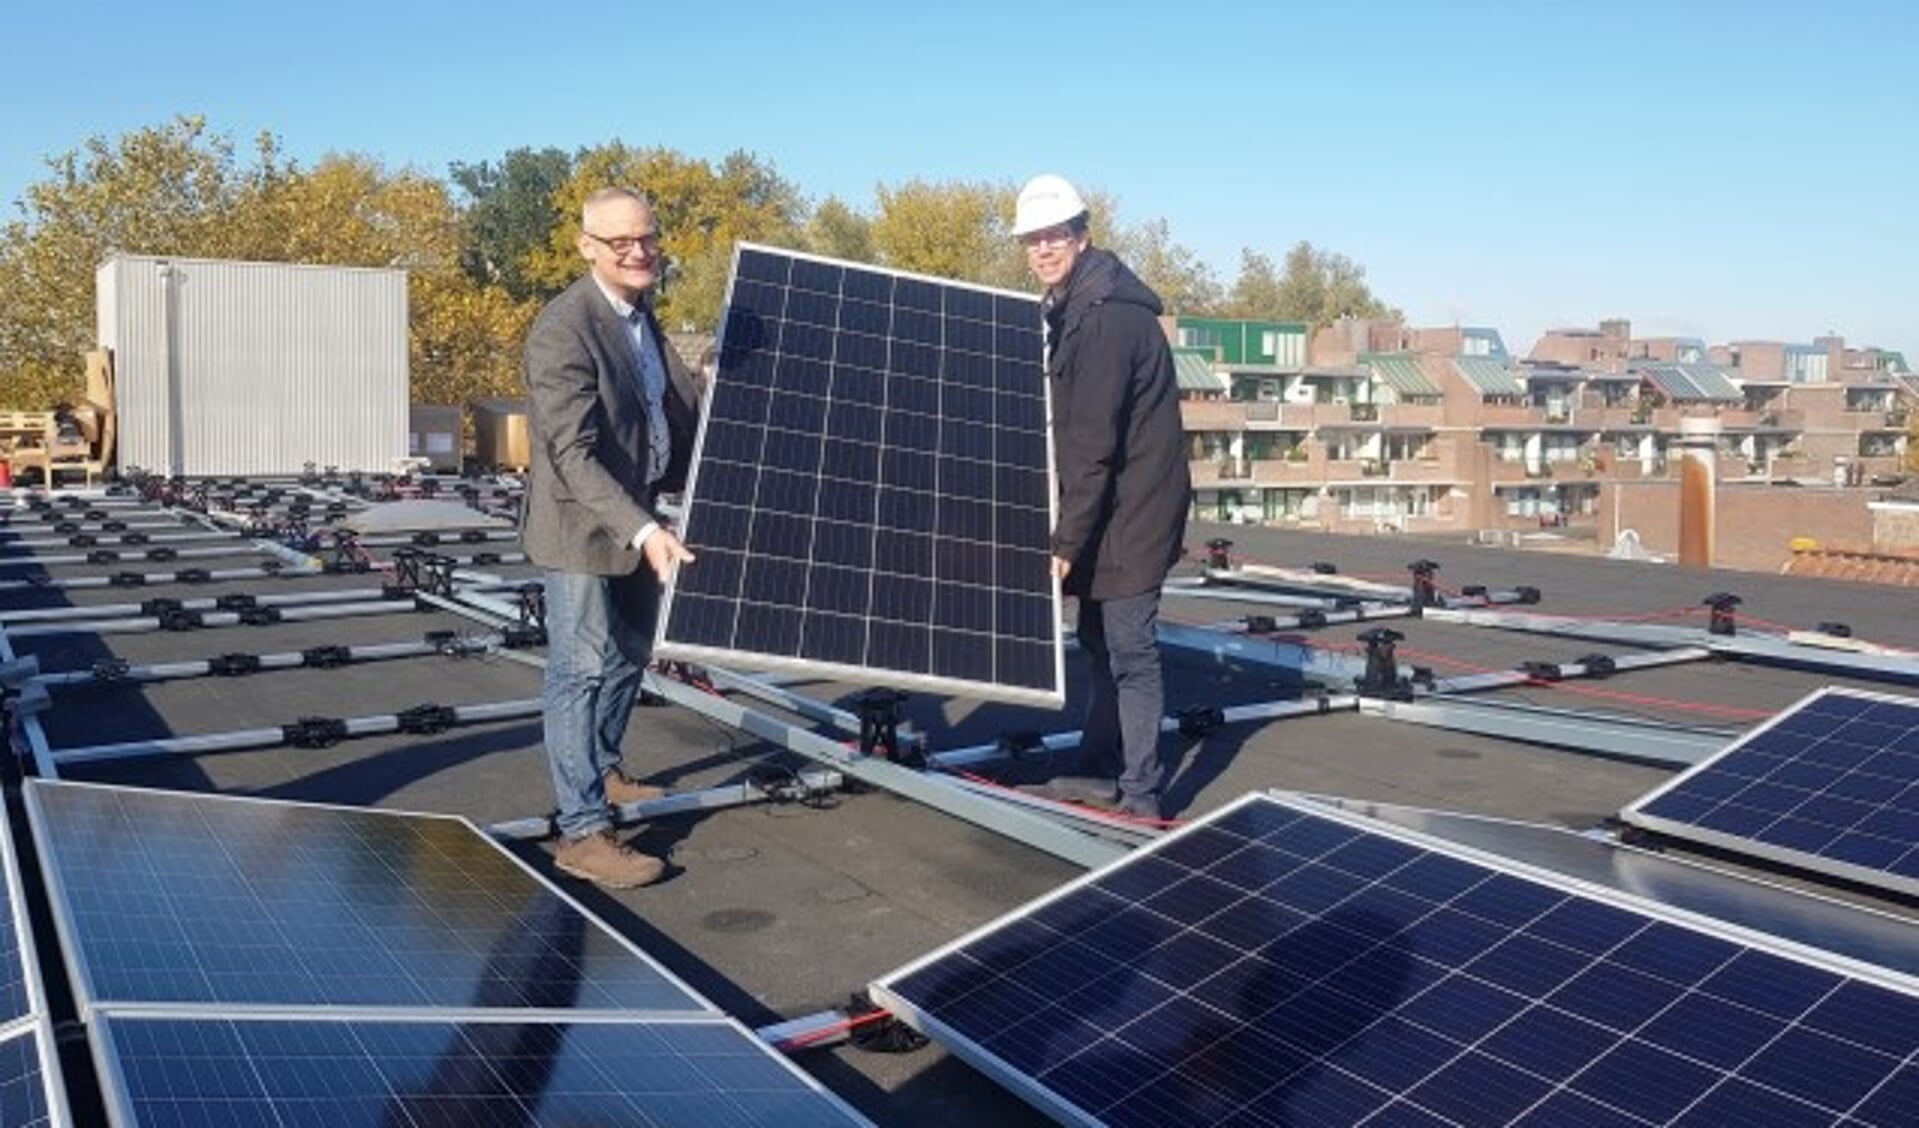 Ruud van Doorn van HEMA Wageningen en wethouder Peter de Haan met 1 van de 260 zonnepanelen. (foto: Kees Stap)